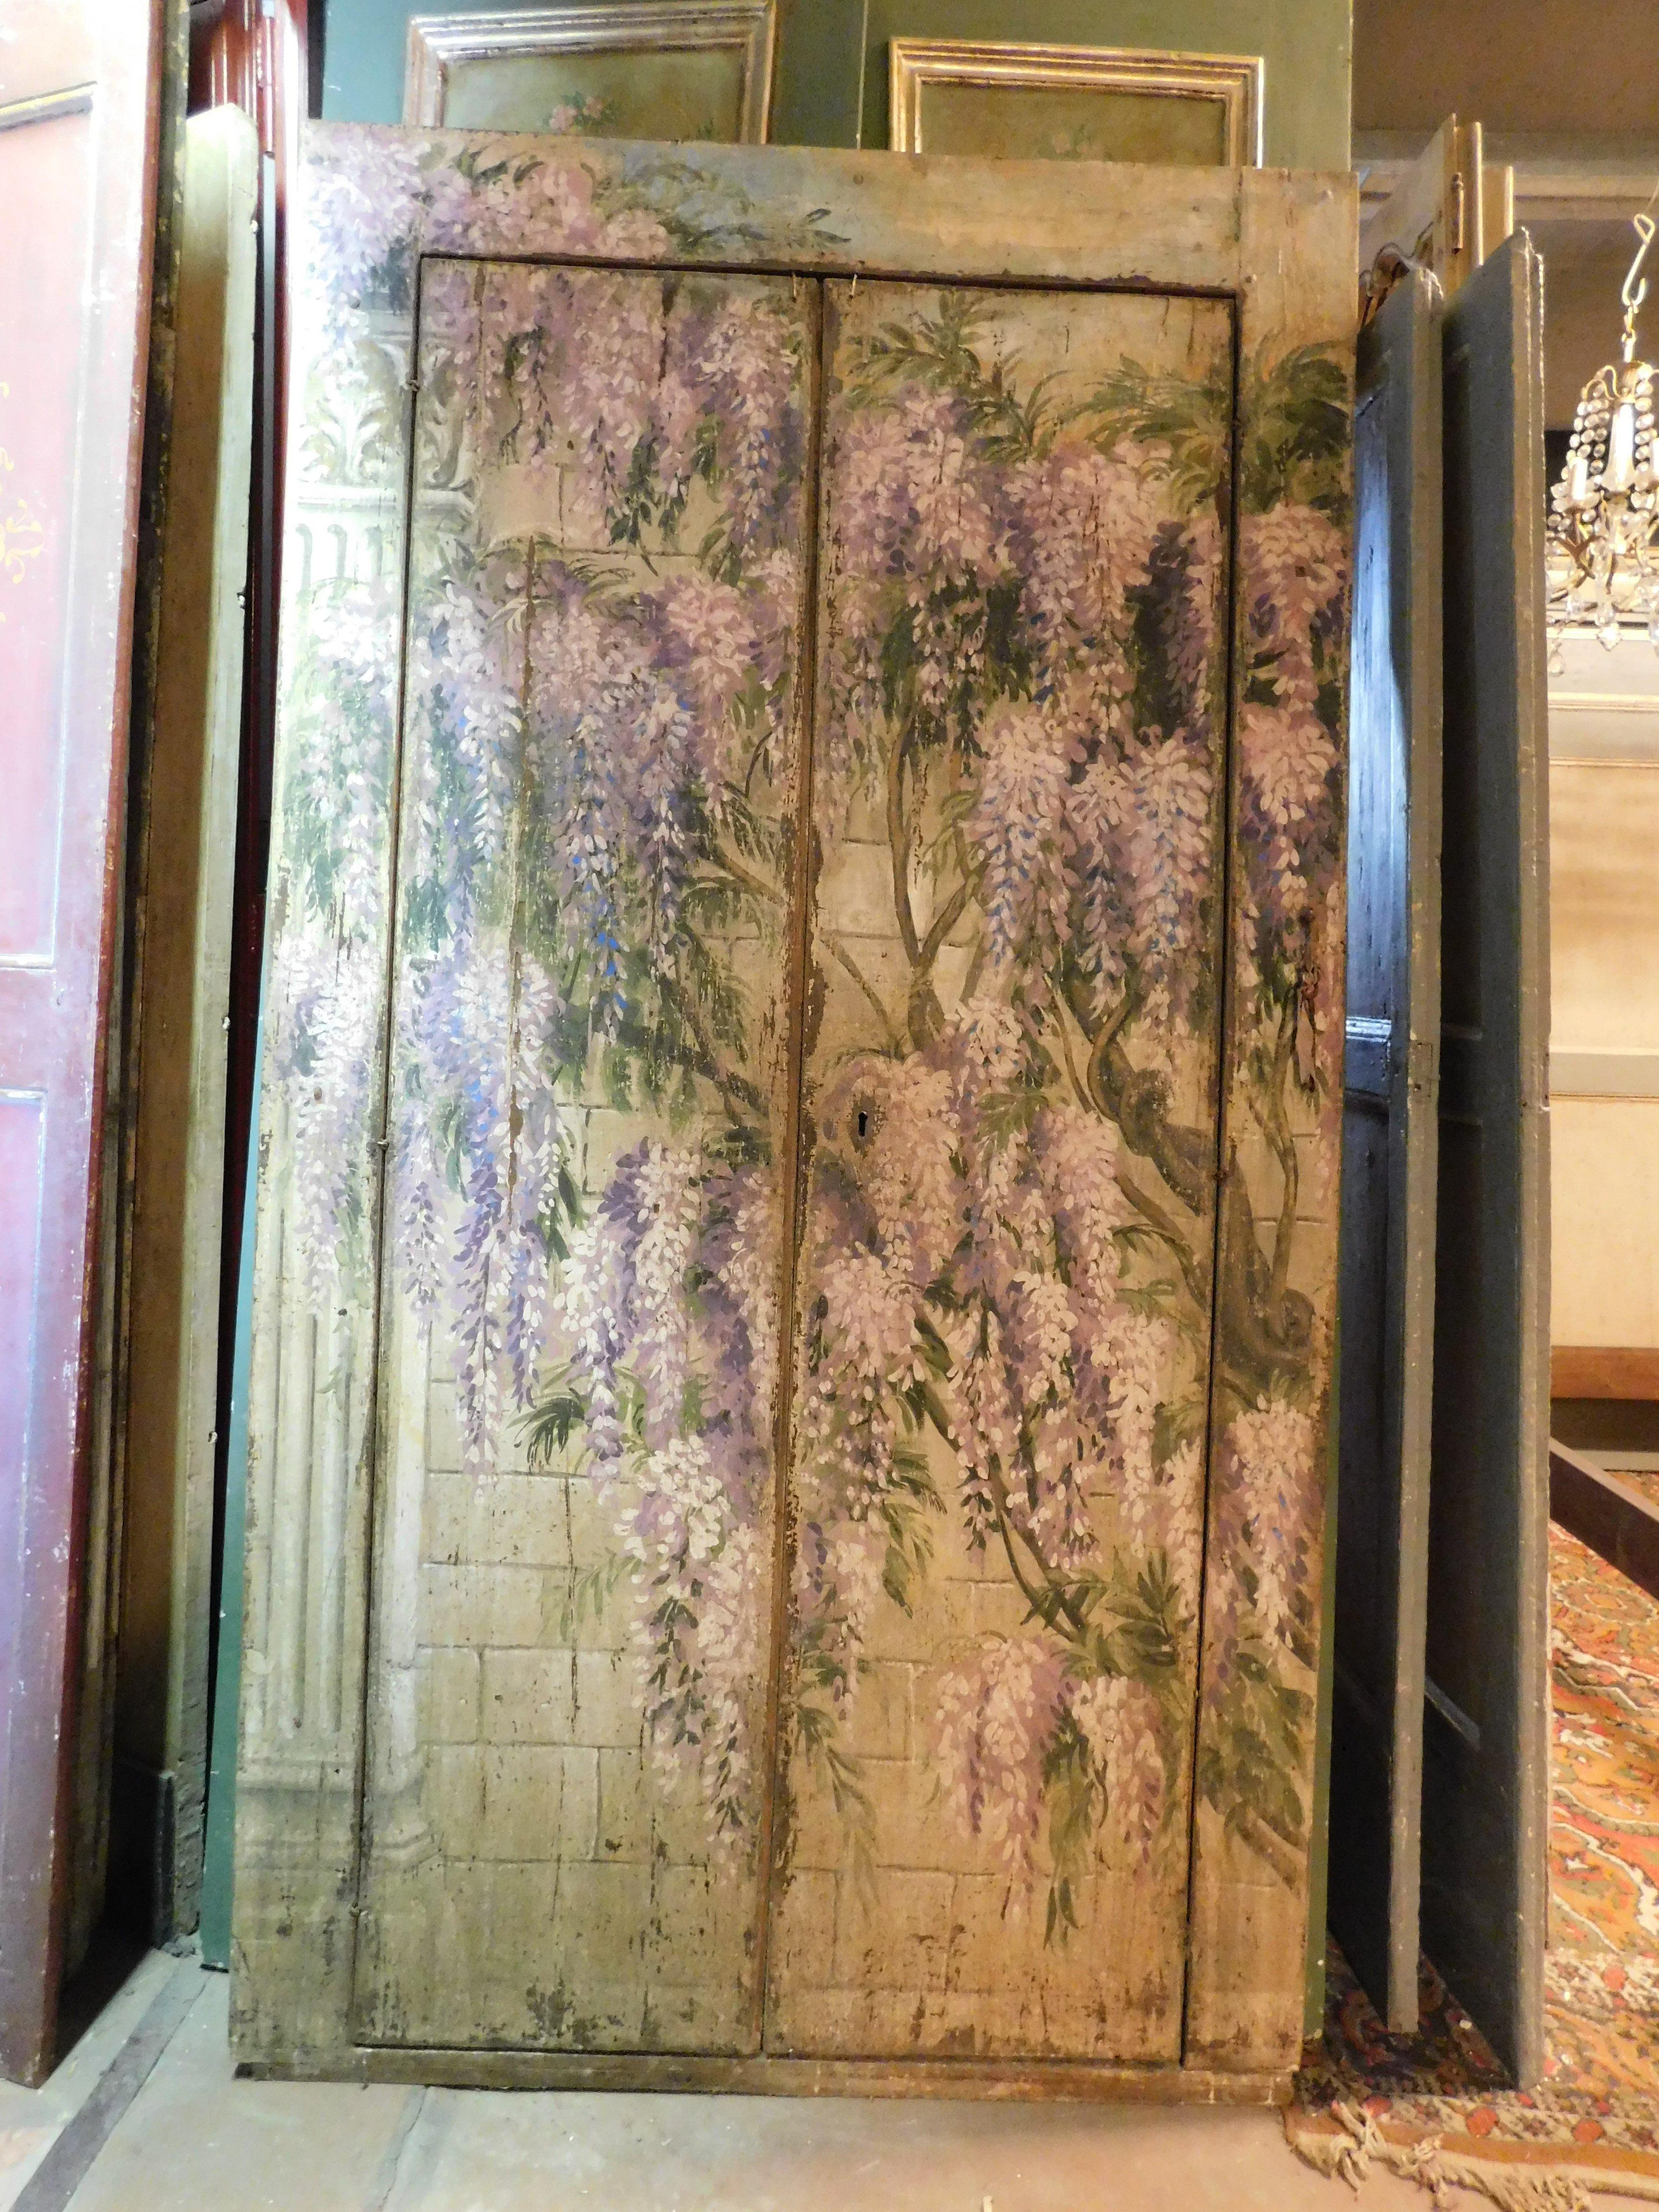 ancienne armoire murale à placards, peinte à la main avec de jolies glycines en fleurs, d'un grand impact visuel, avec une double porte qui s'ouvre pour tirer plus de cadre, née comme couverture pour une armoire murale, au milieu du 20ème siècle en